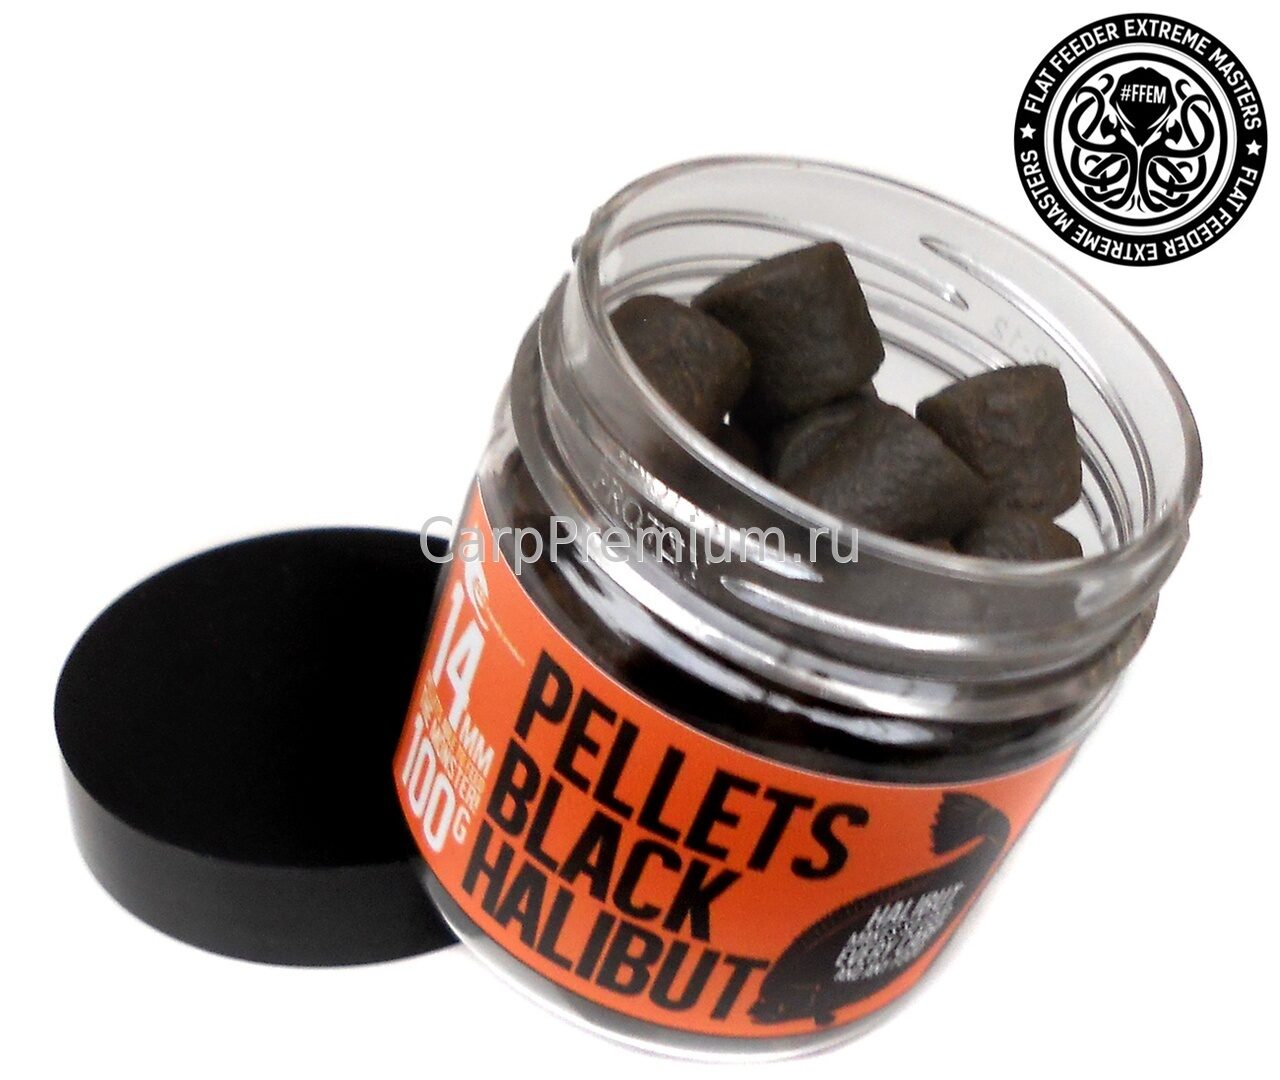 Пеллетс насадочный 14 мм Чёрный Палтус FFEM Baits (ФФЕМ Бейтс) - Hookbaits Pellets Black Halibut, 100 г